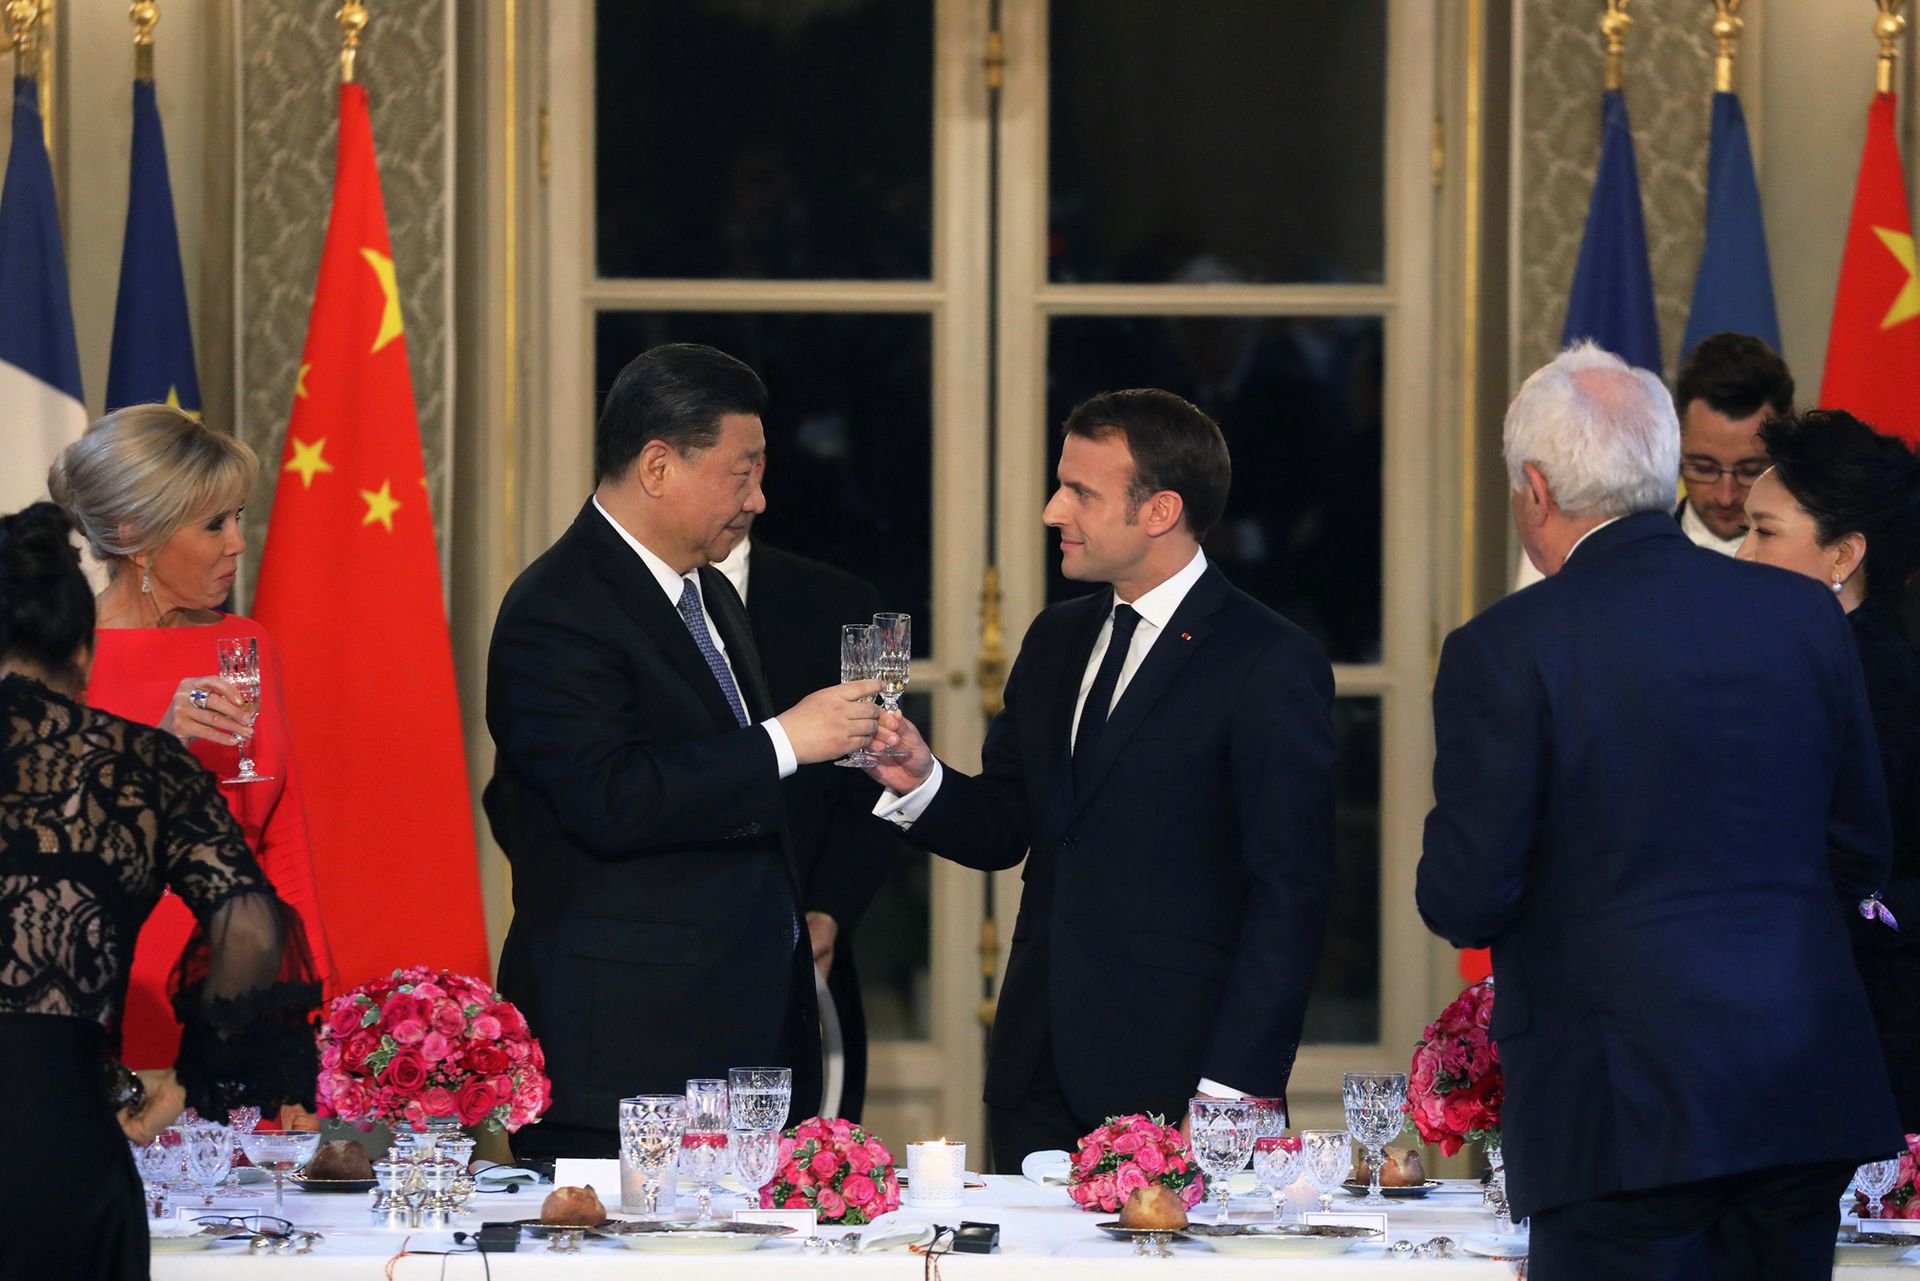 2019年3月25日，在法国巴黎爱丽舍宫举行的国宴上，法国总统马克龙和中国国家主席习近平举杯祝酒。（Reuters）